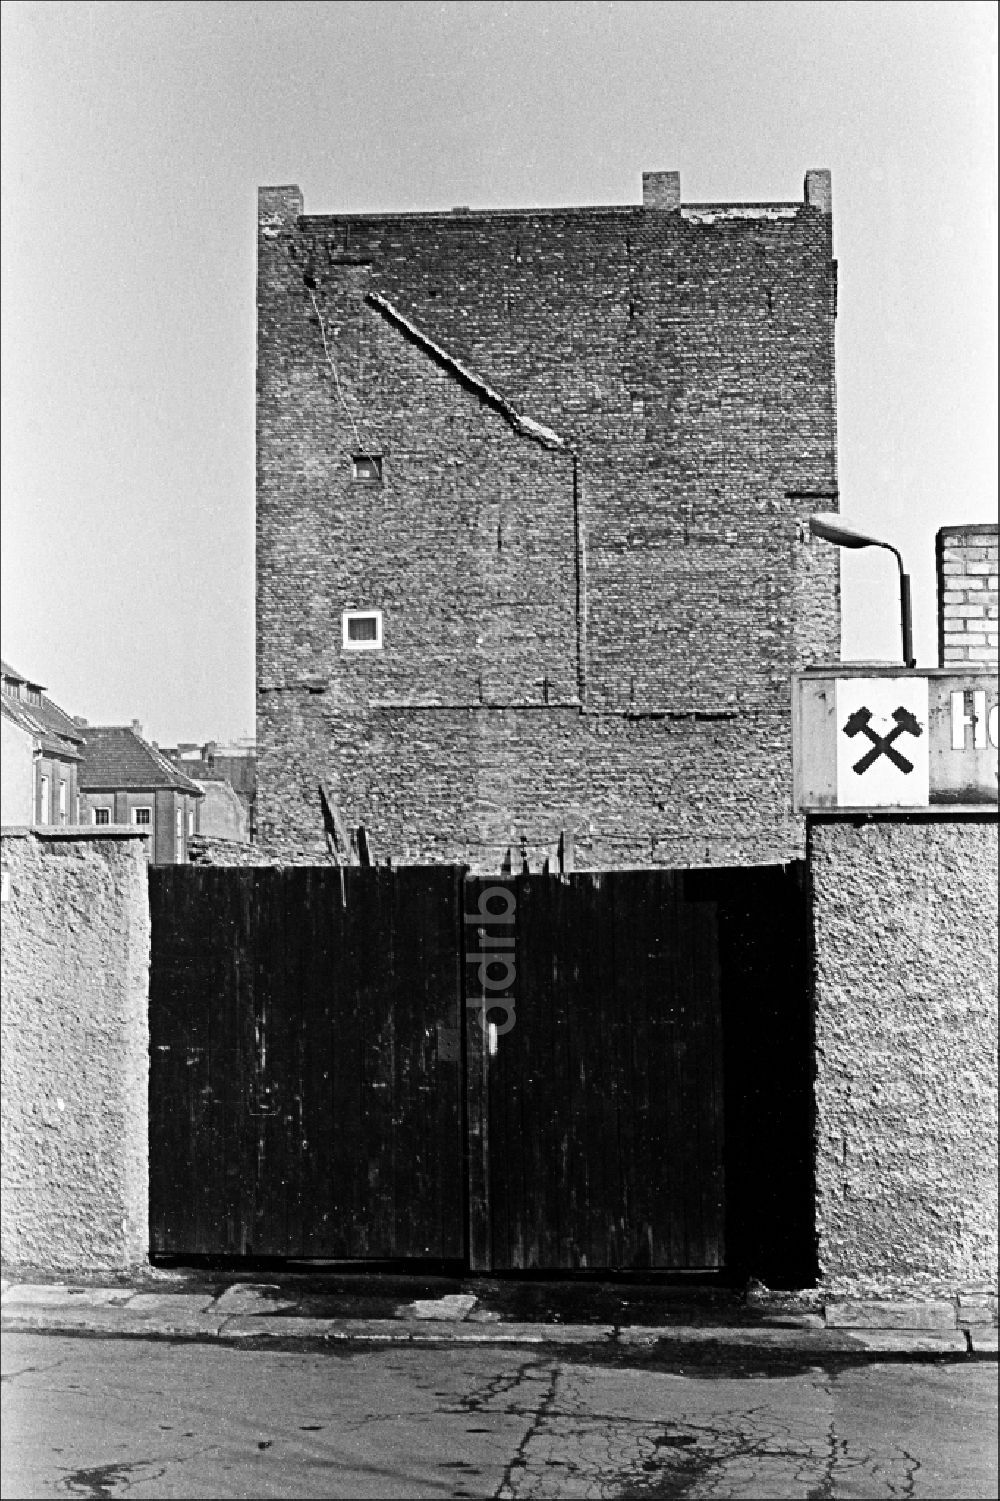 Berlin: Eingangsbereich eines Kohlehandels im Ortsteil Mitte in Berlin in der DDR